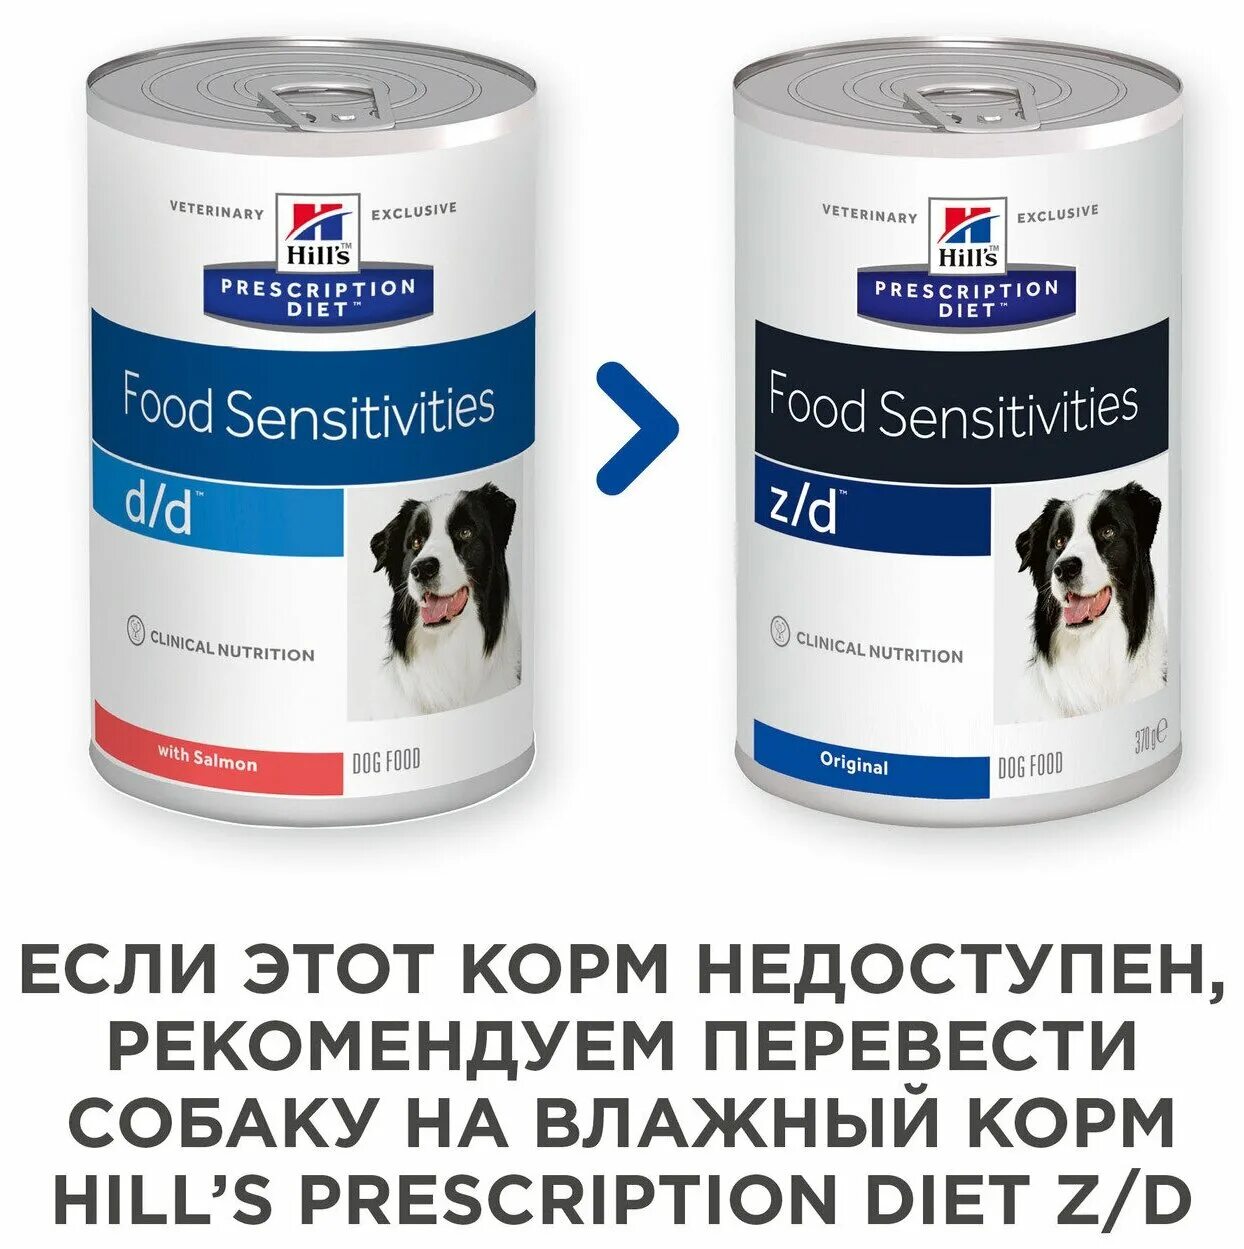 Хиллс гипоаллергенный для собак. Хиллс гипоаллергенный ветеринарный корм. Хиллс для собак противоаллергенный. Корм Хиллс для аллергиков собак.